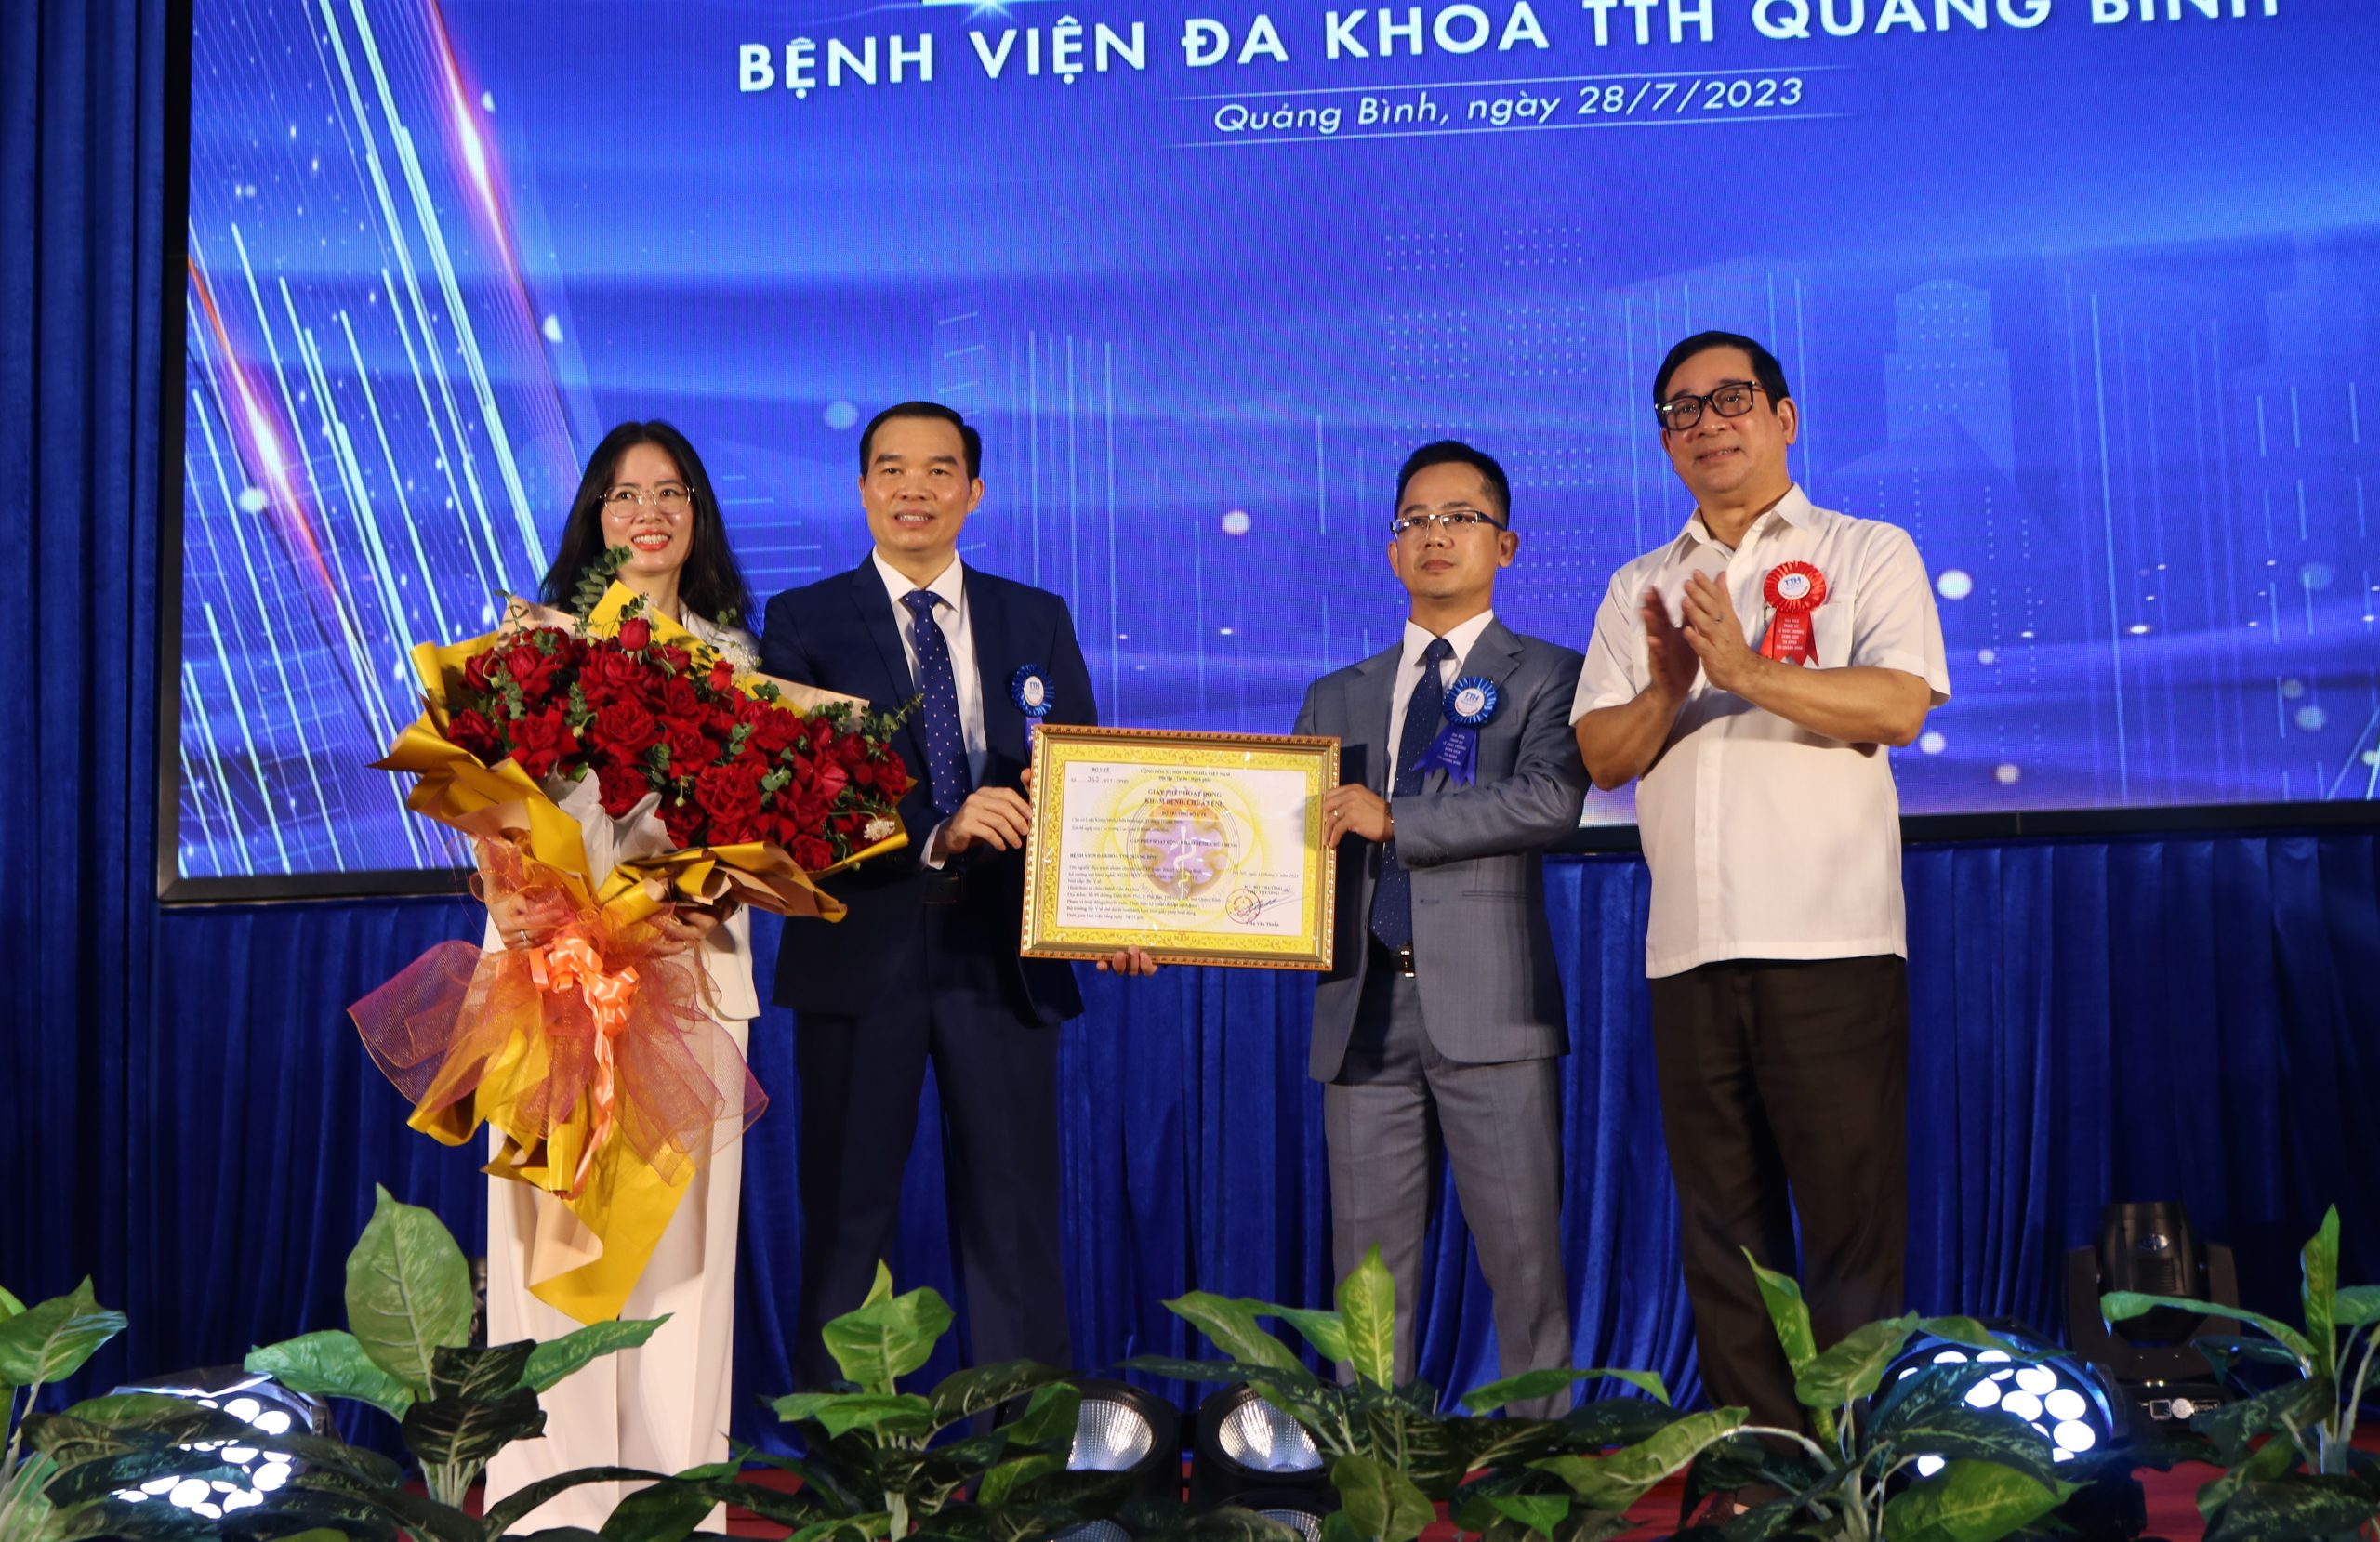 PGS.TS Lương Ngọc Khuê, Phó chủ tịch Hội đồng Y khoa Quốc gia trao giấy phép hoạt động cho lãnh đạo bệnh viện.